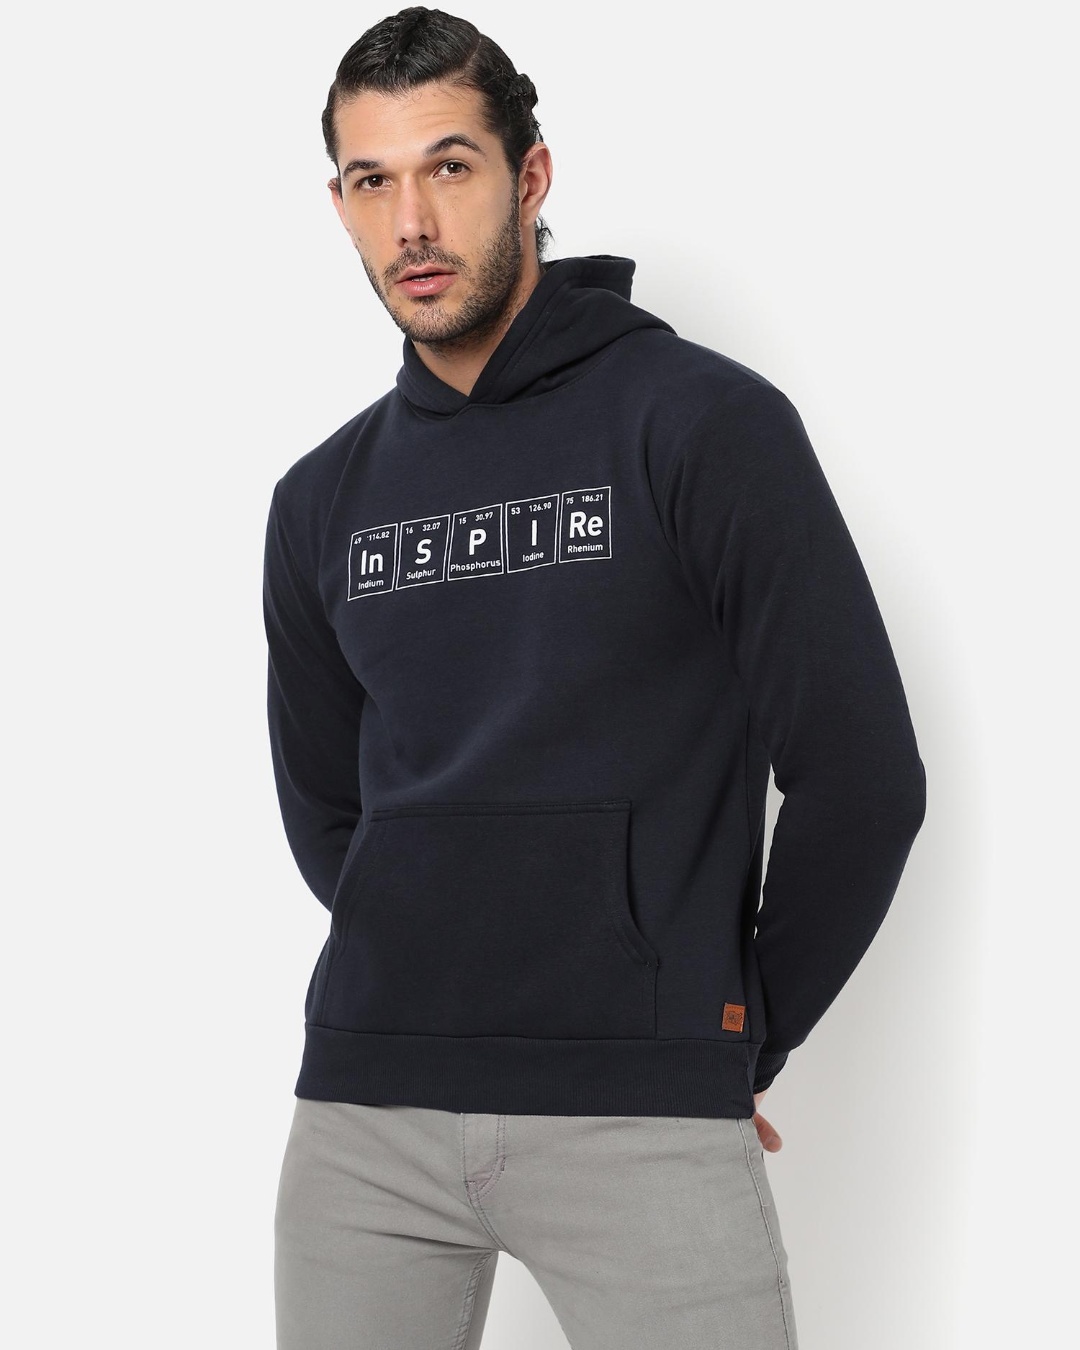 Buy Men's Blue Inspire Typography Hooded Sweatshirt Online at Bewakoof